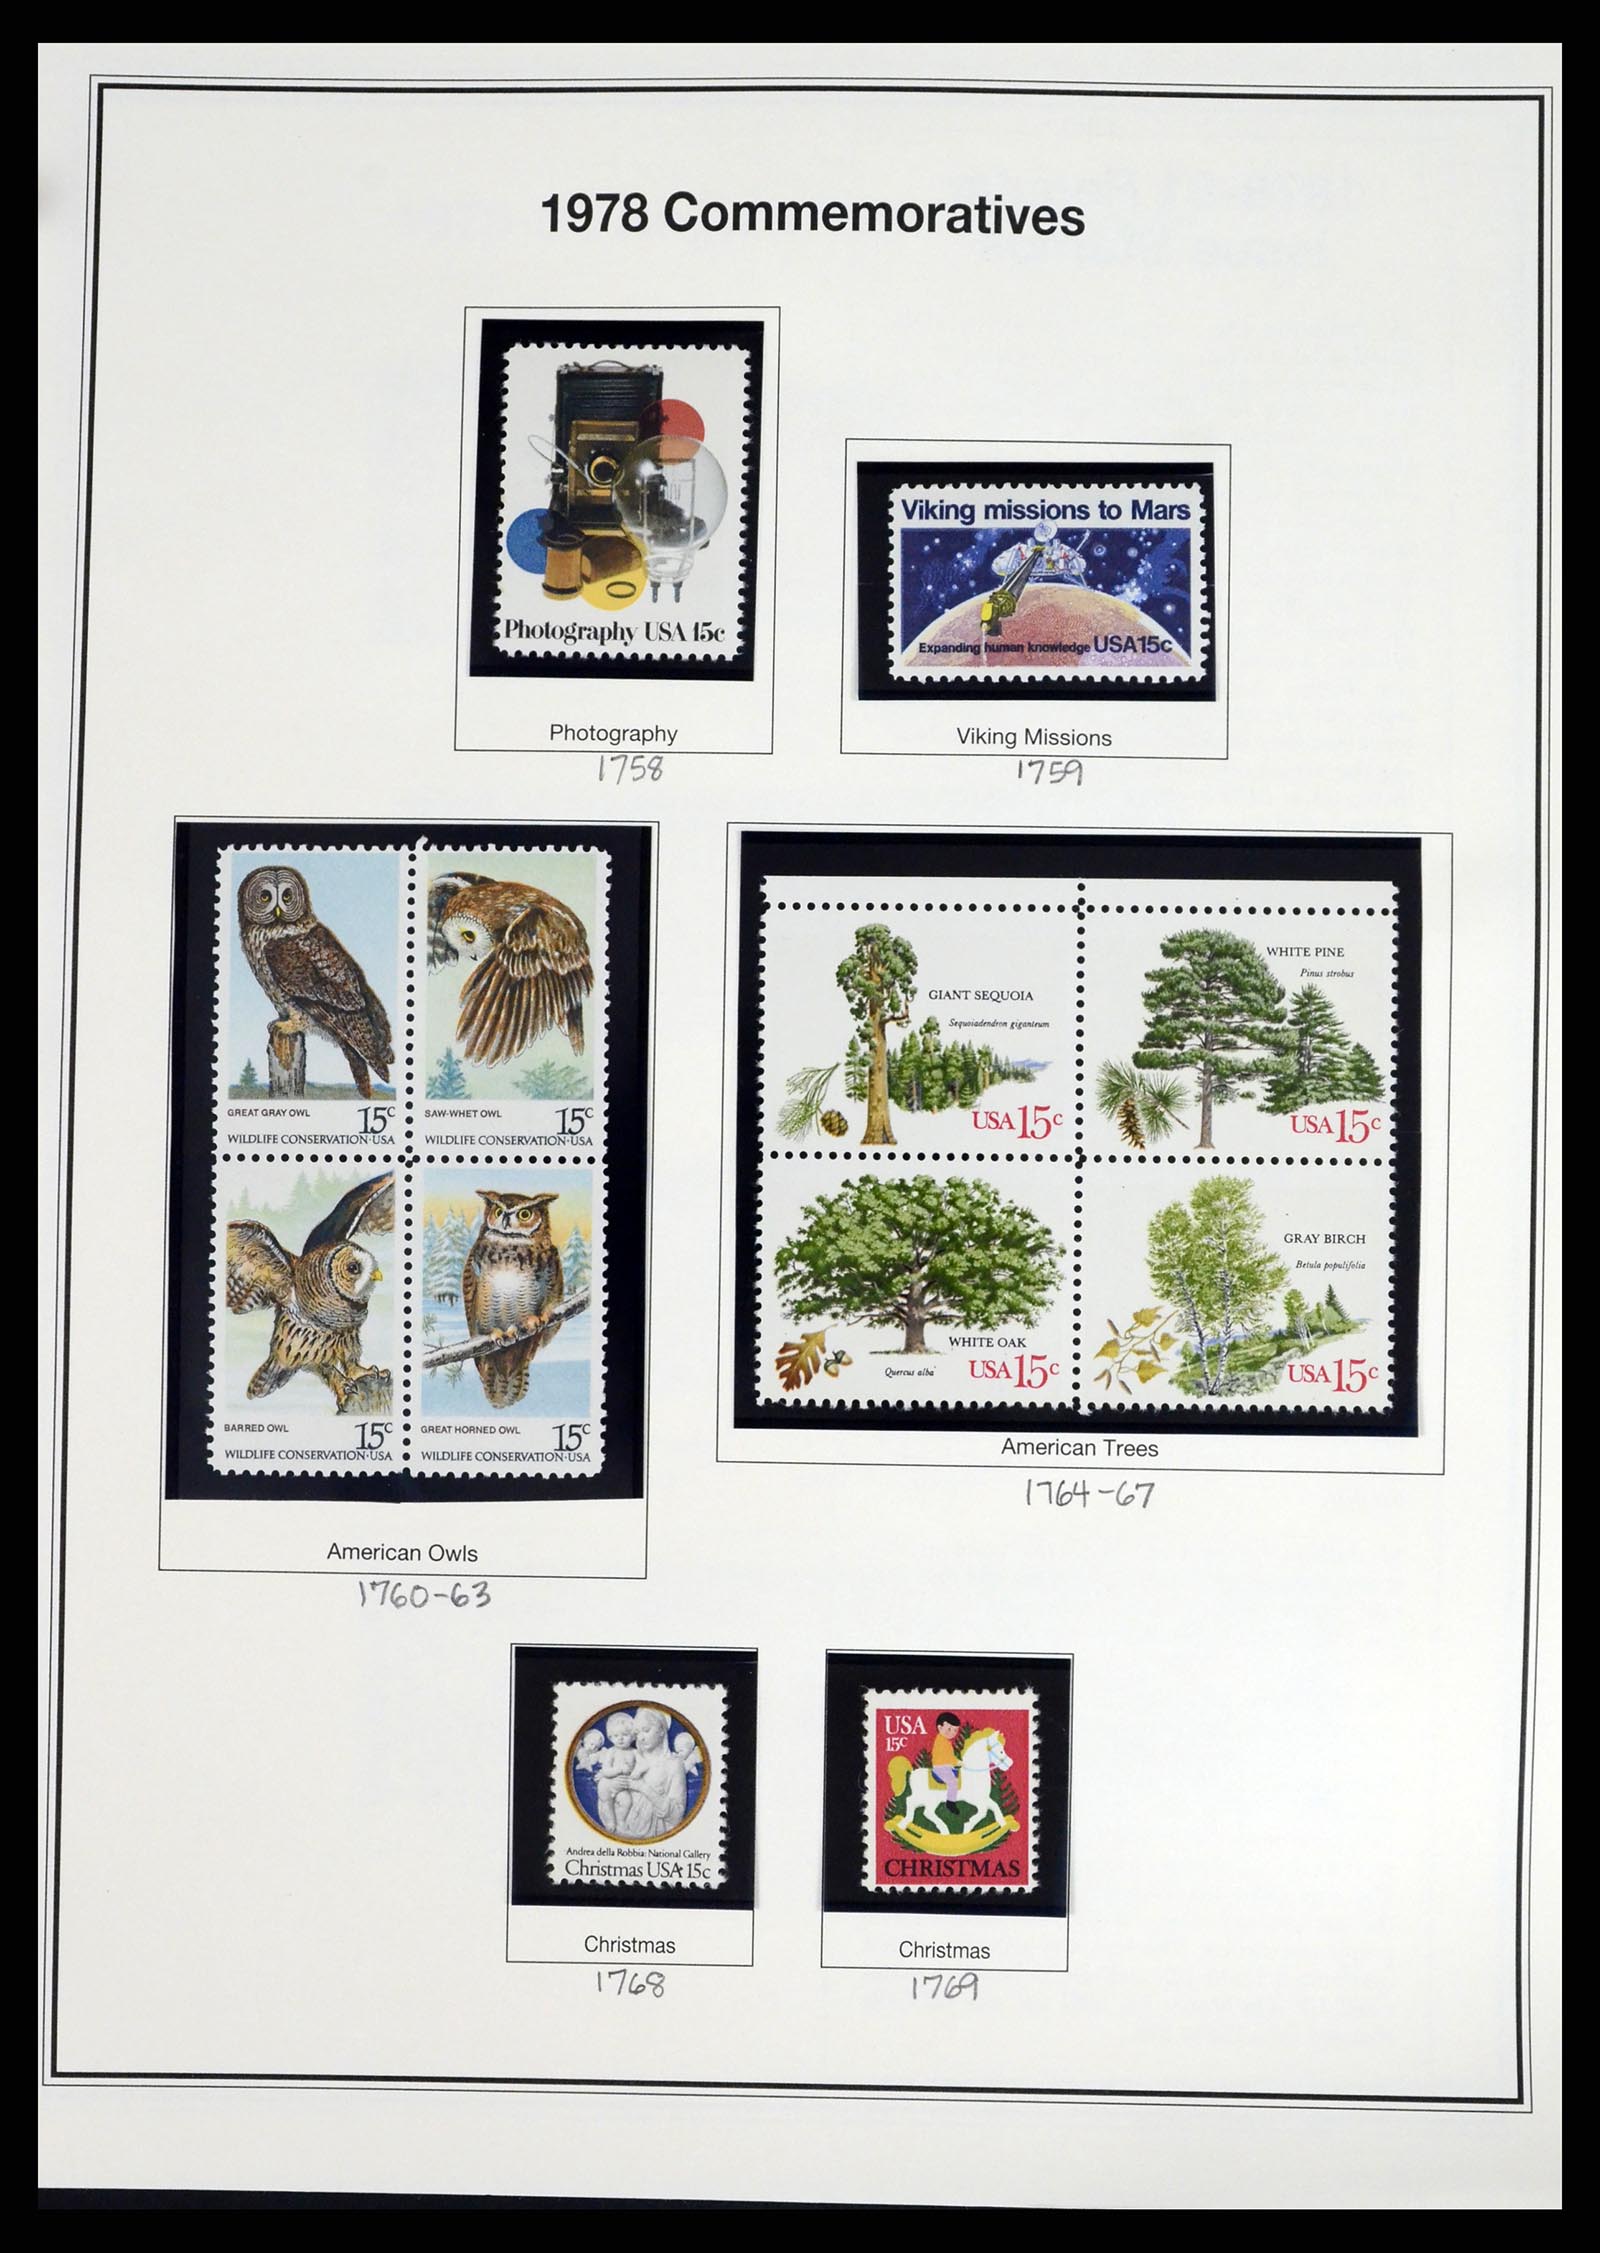 37193 045 - Stamp collection 37193 USA 1970-2020!